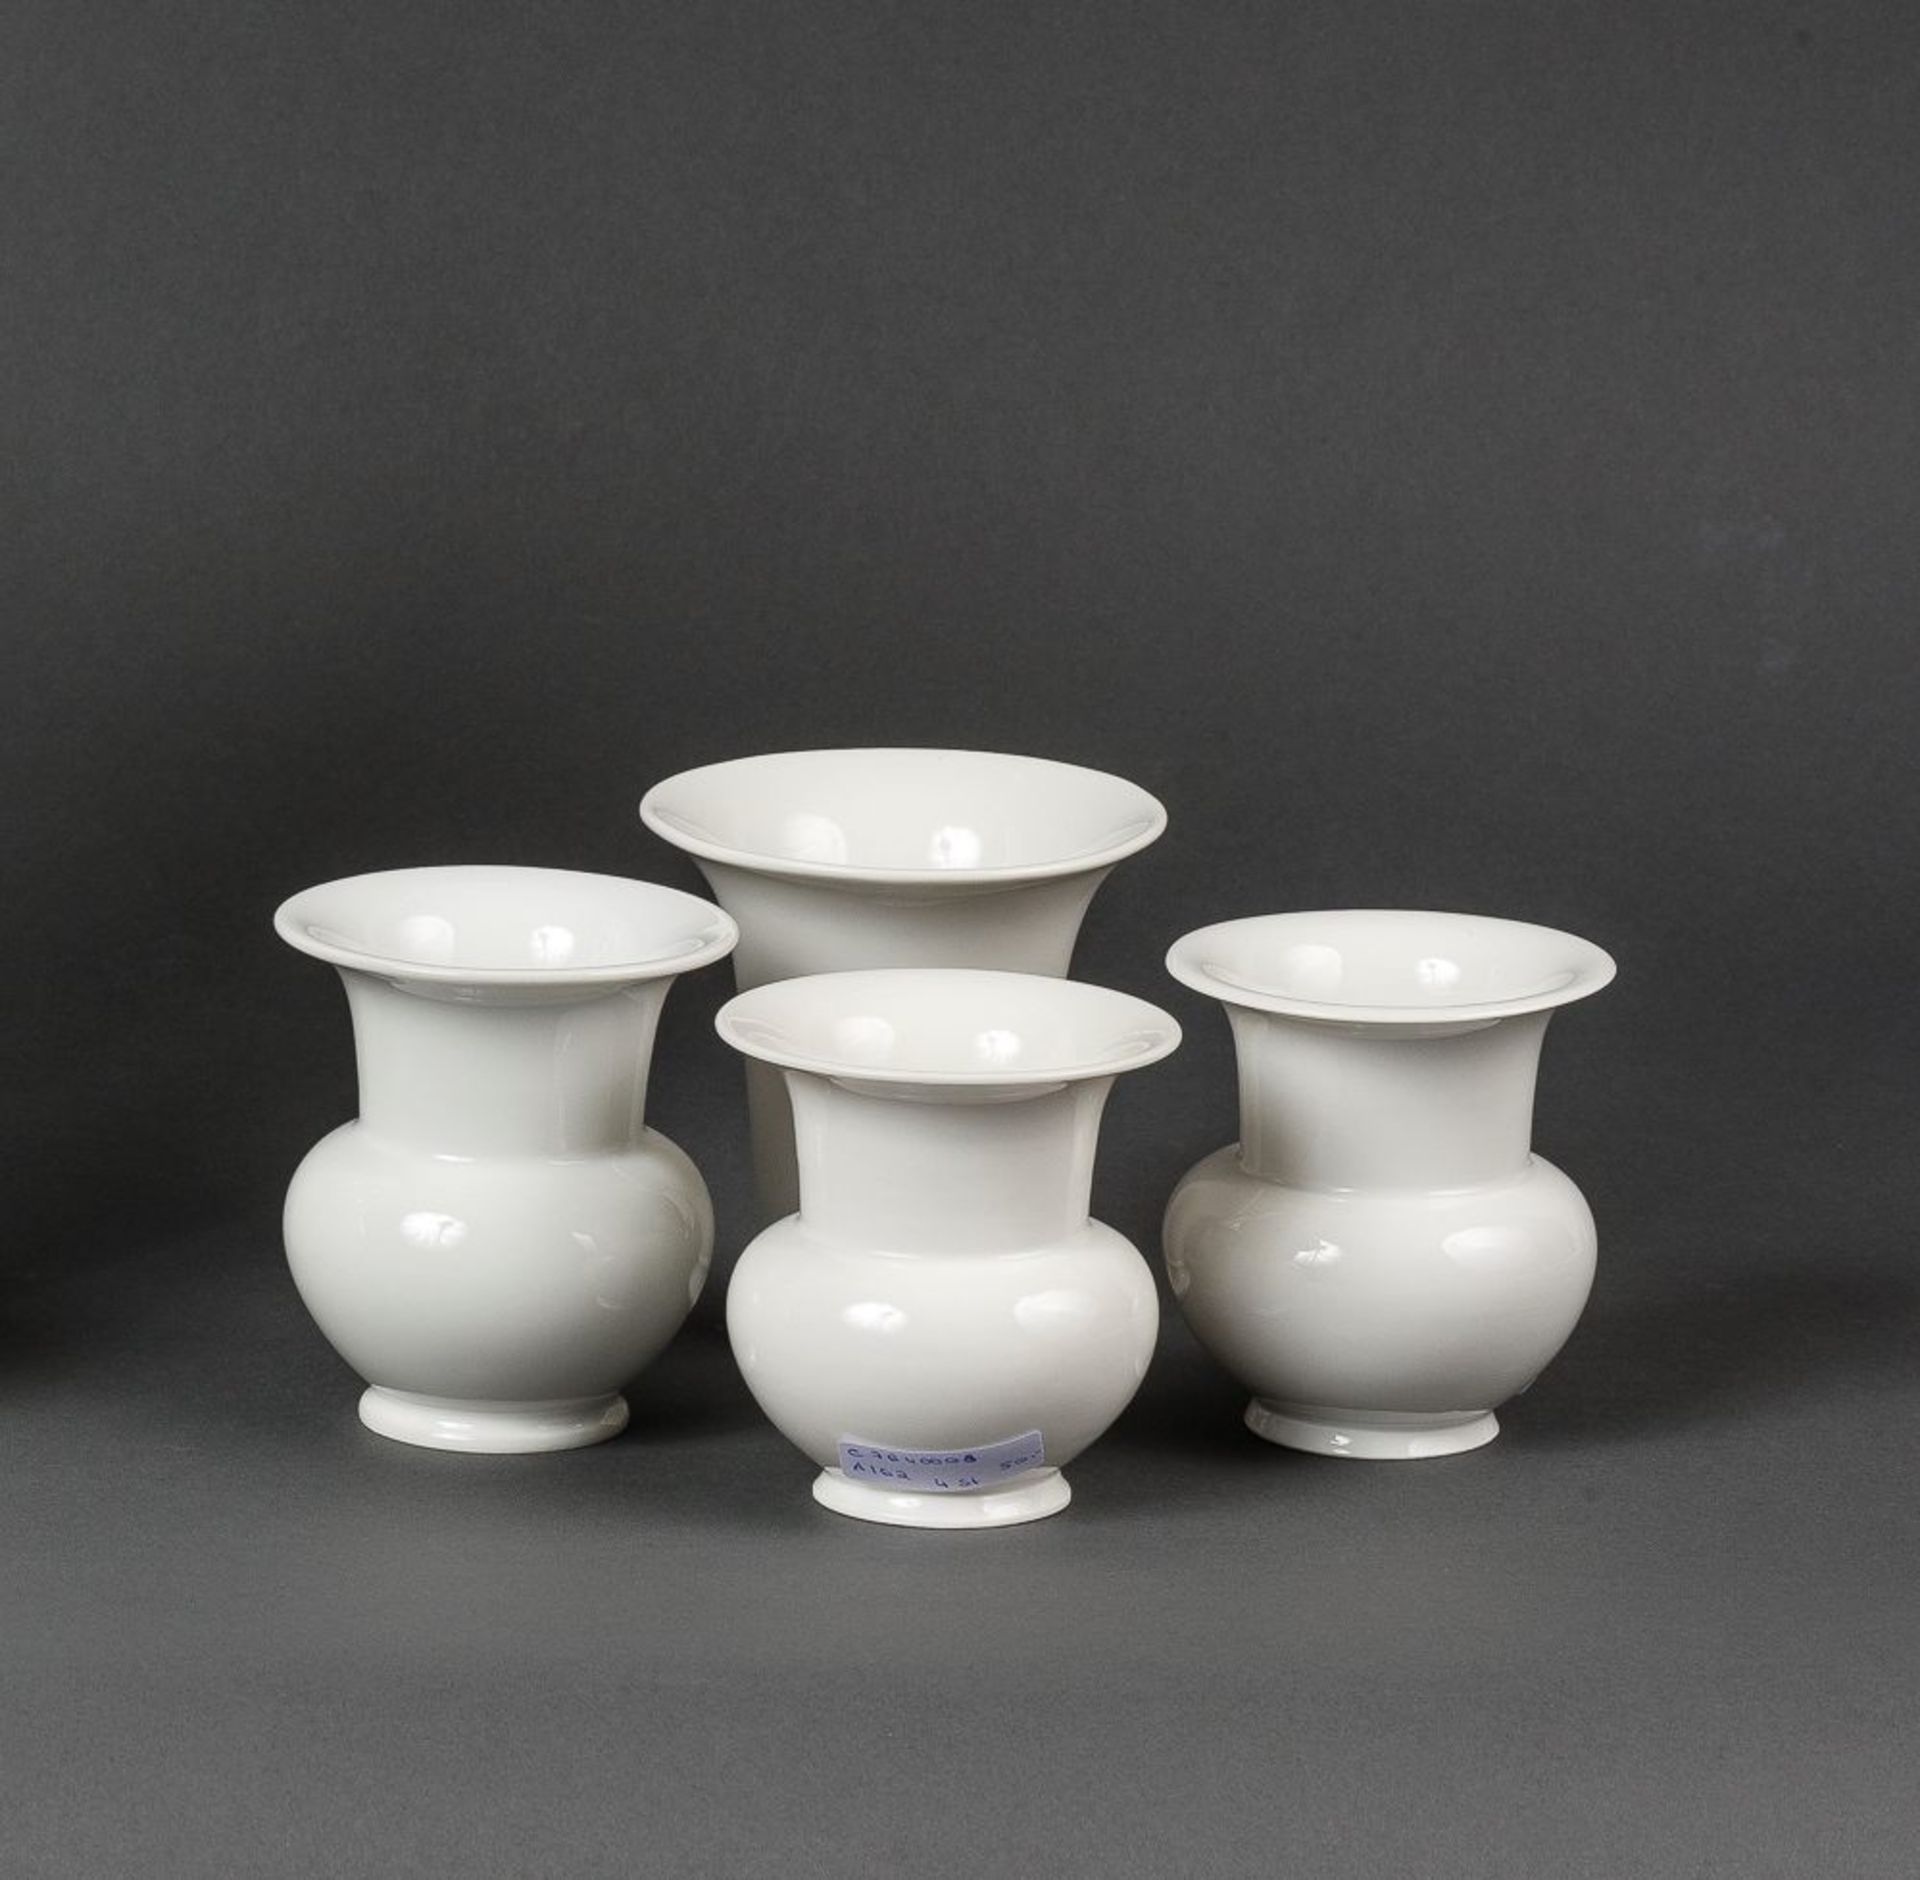 Vier VasenWeißporzellan. Auf rundem Standring. Drei Vasen mit gedrückt bauchigem Korpus,